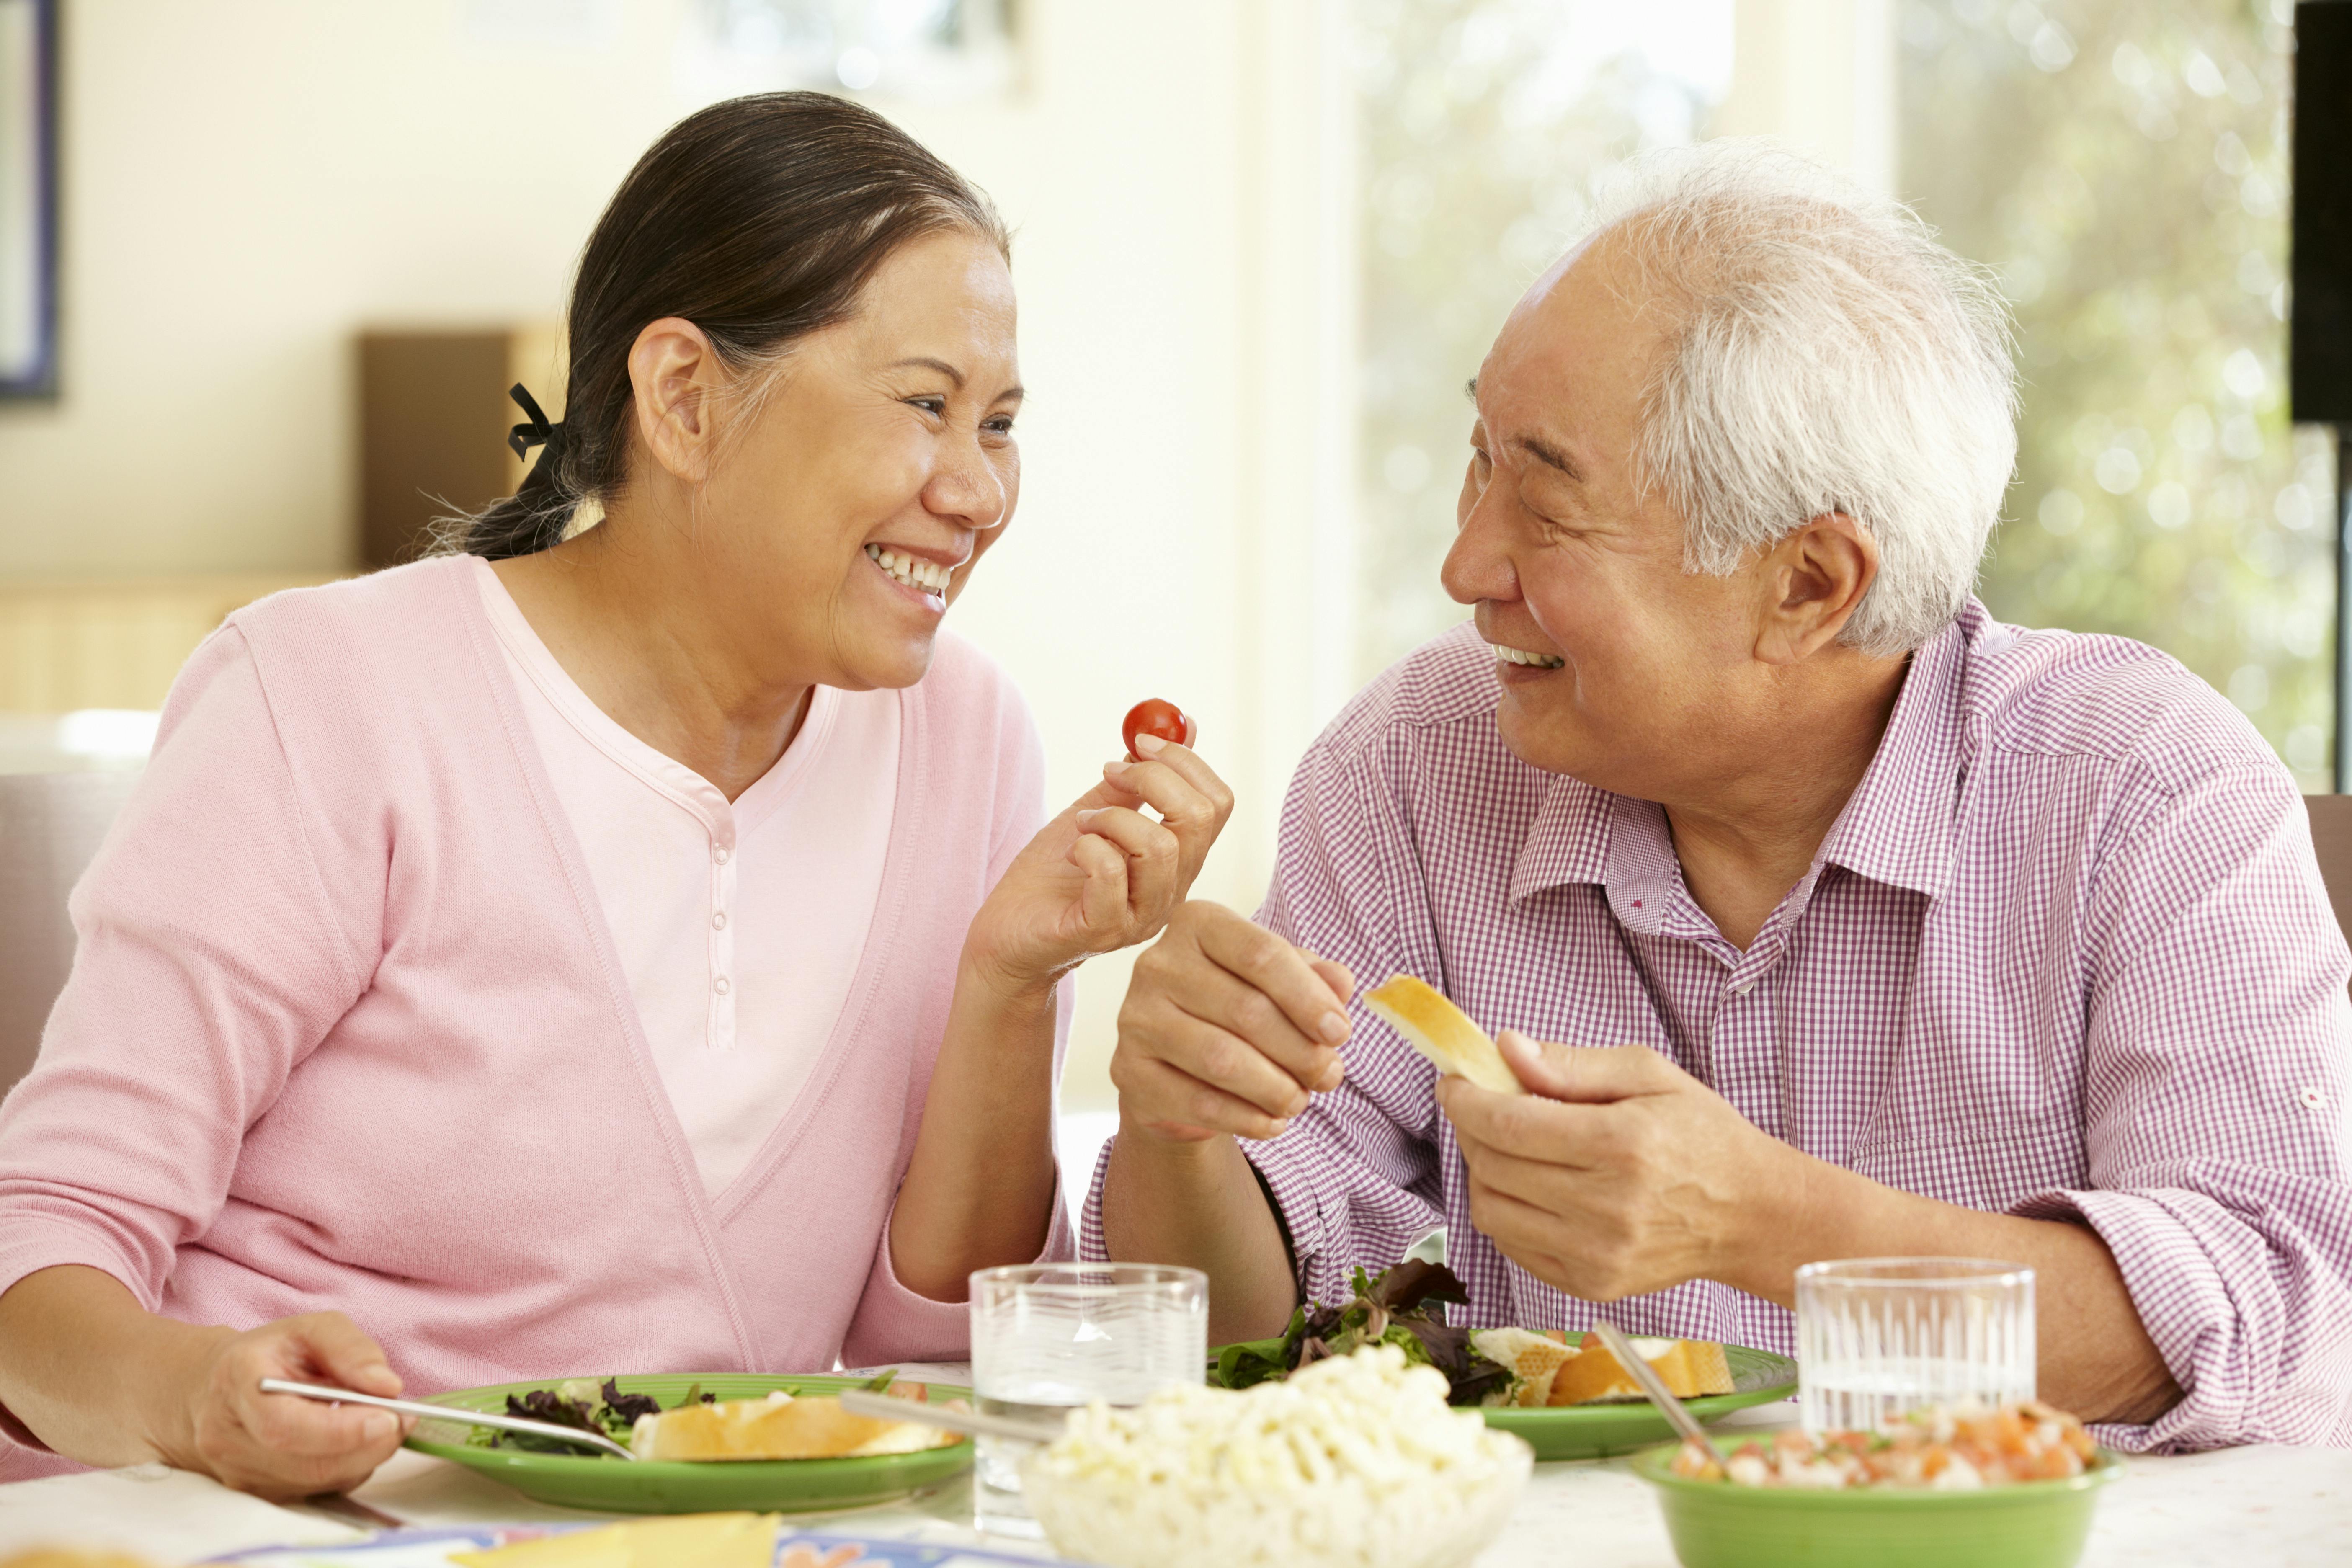 Older couple sharing food together